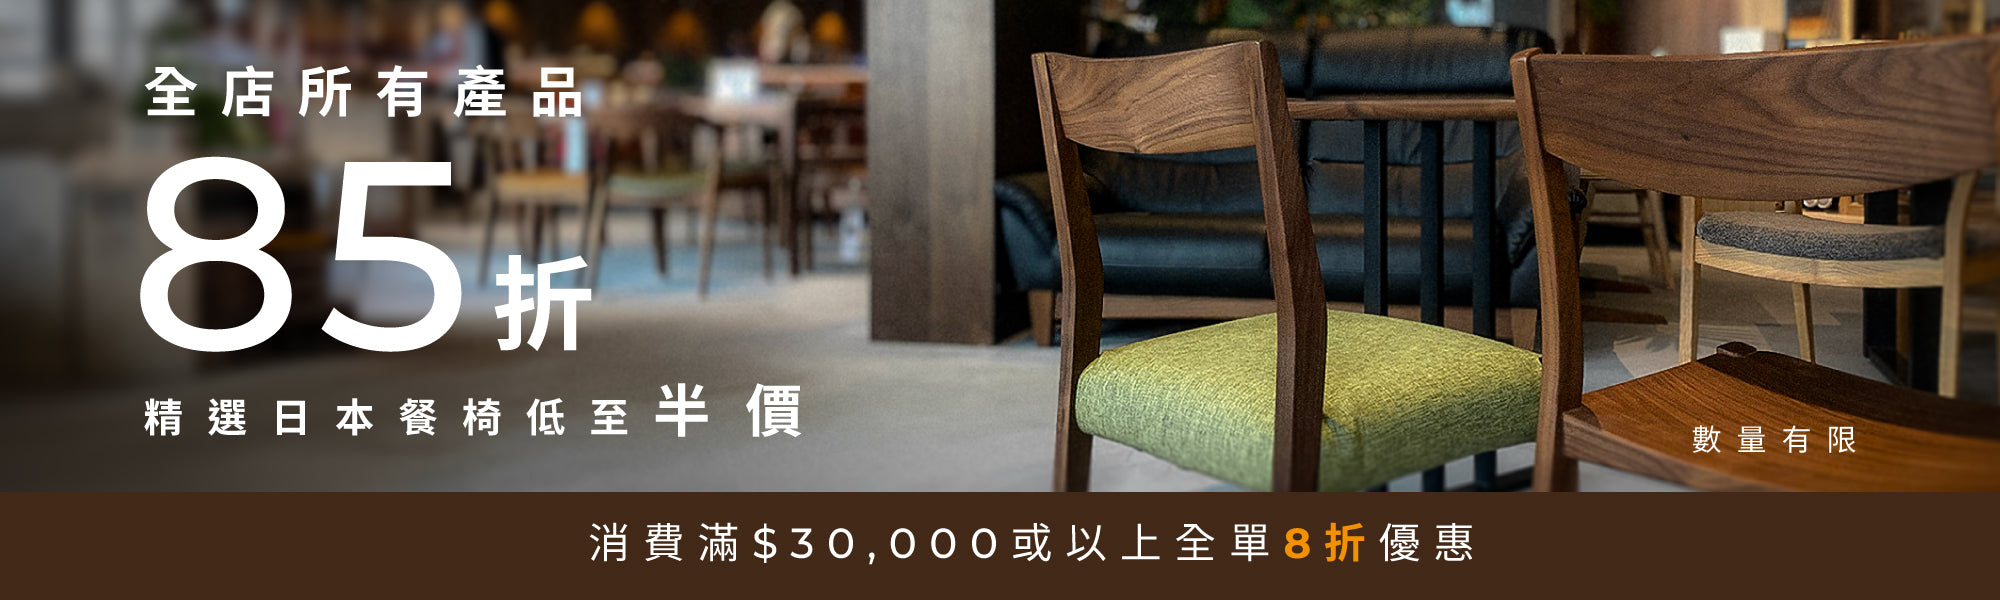 全店家具85折| 精選日本餐椅低至半價